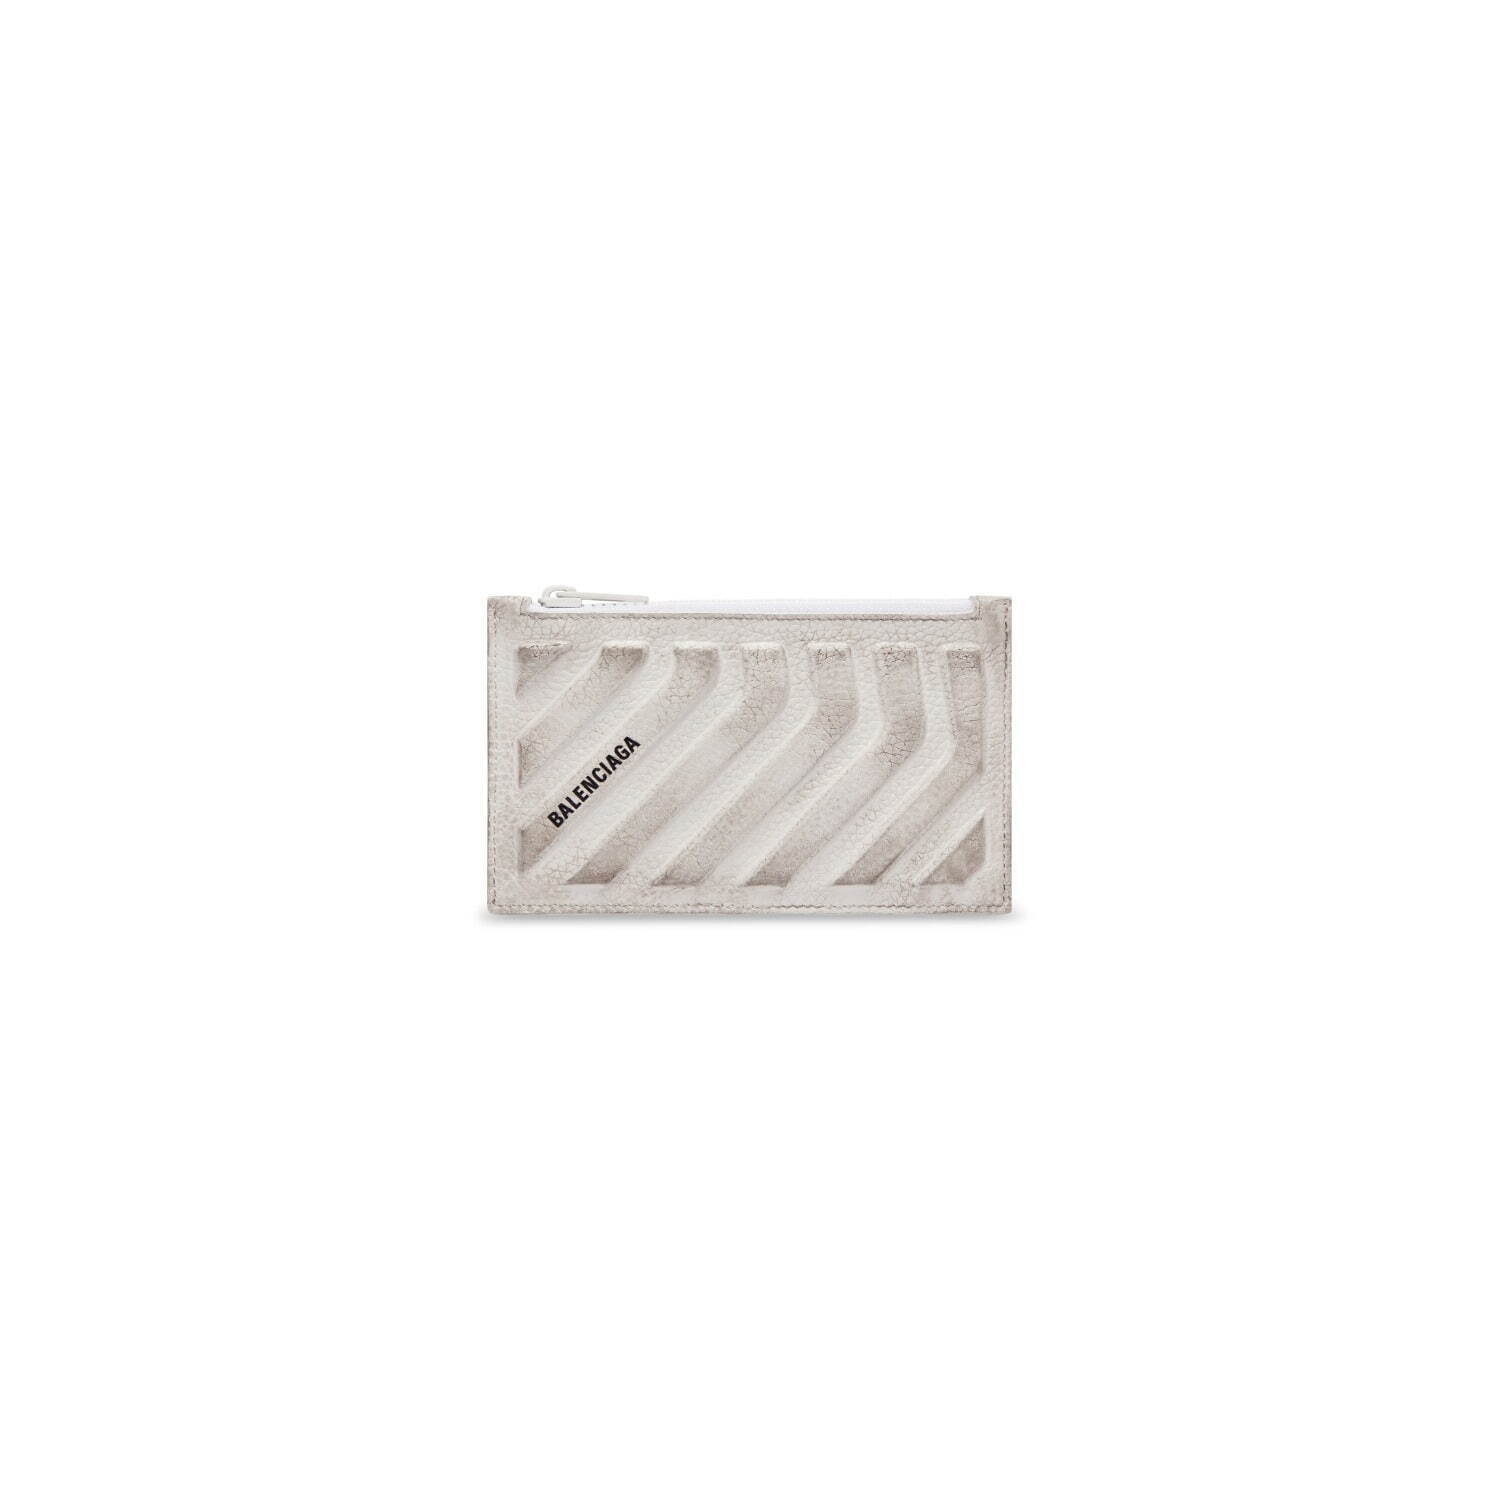 カー ロング コイン＆カード ホルダー(W13.5×H8.5×D1cm) 38,500円
Courtesy of Balenciaga